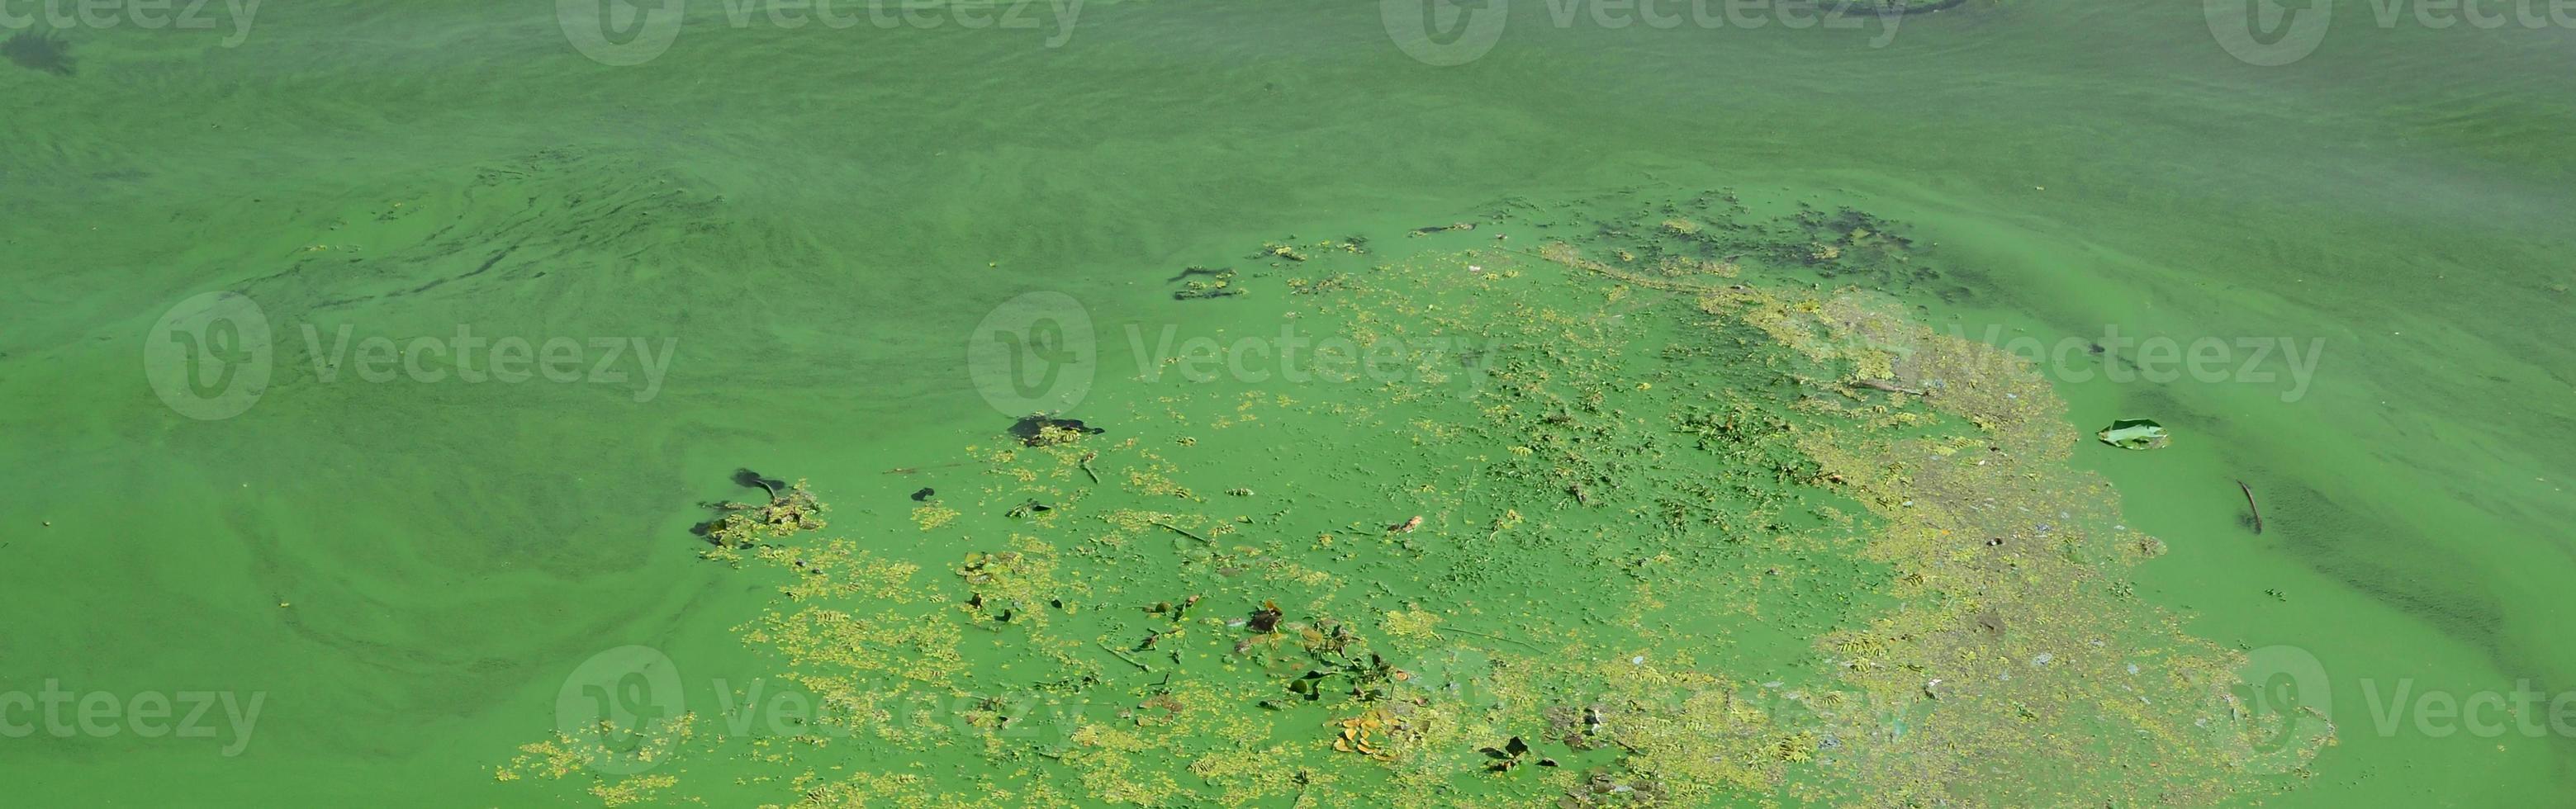 la superficie de un viejo pantano cubierto de lenteja de agua y hojas de lirio foto